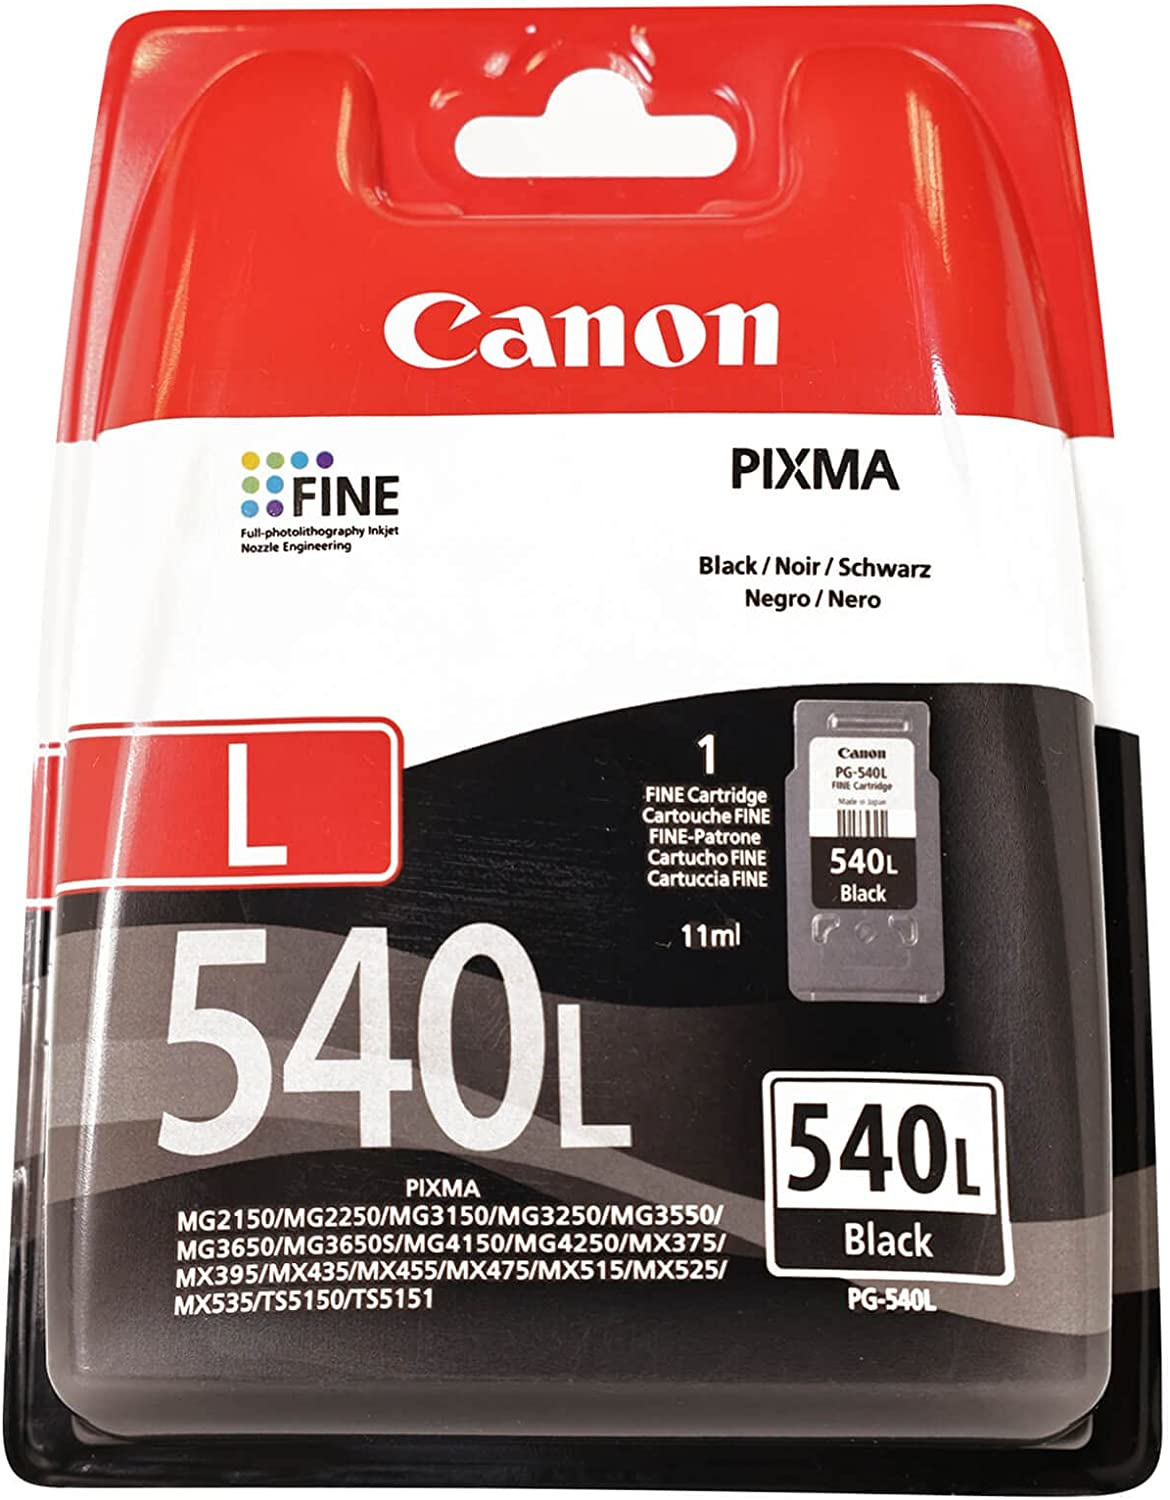 Canon PIXMA MG3250 - Imprimantes jet d'encre - Canon France